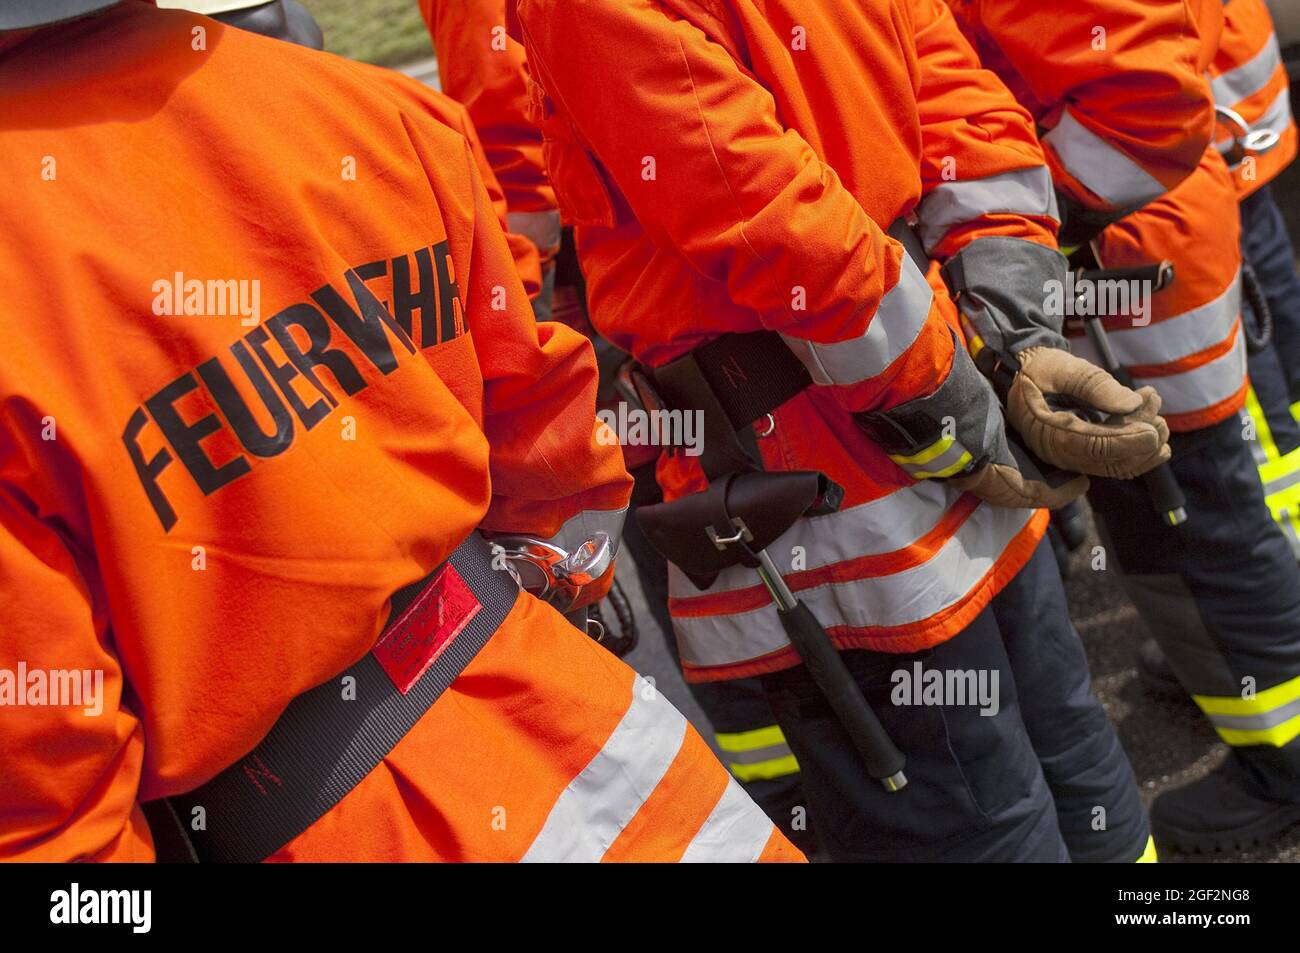 Pompiers debout ensemble, bandes rétroréfléchissantes et couleurs fluorescentes sur les vêtements de protection , Allemagne Banque D'Images